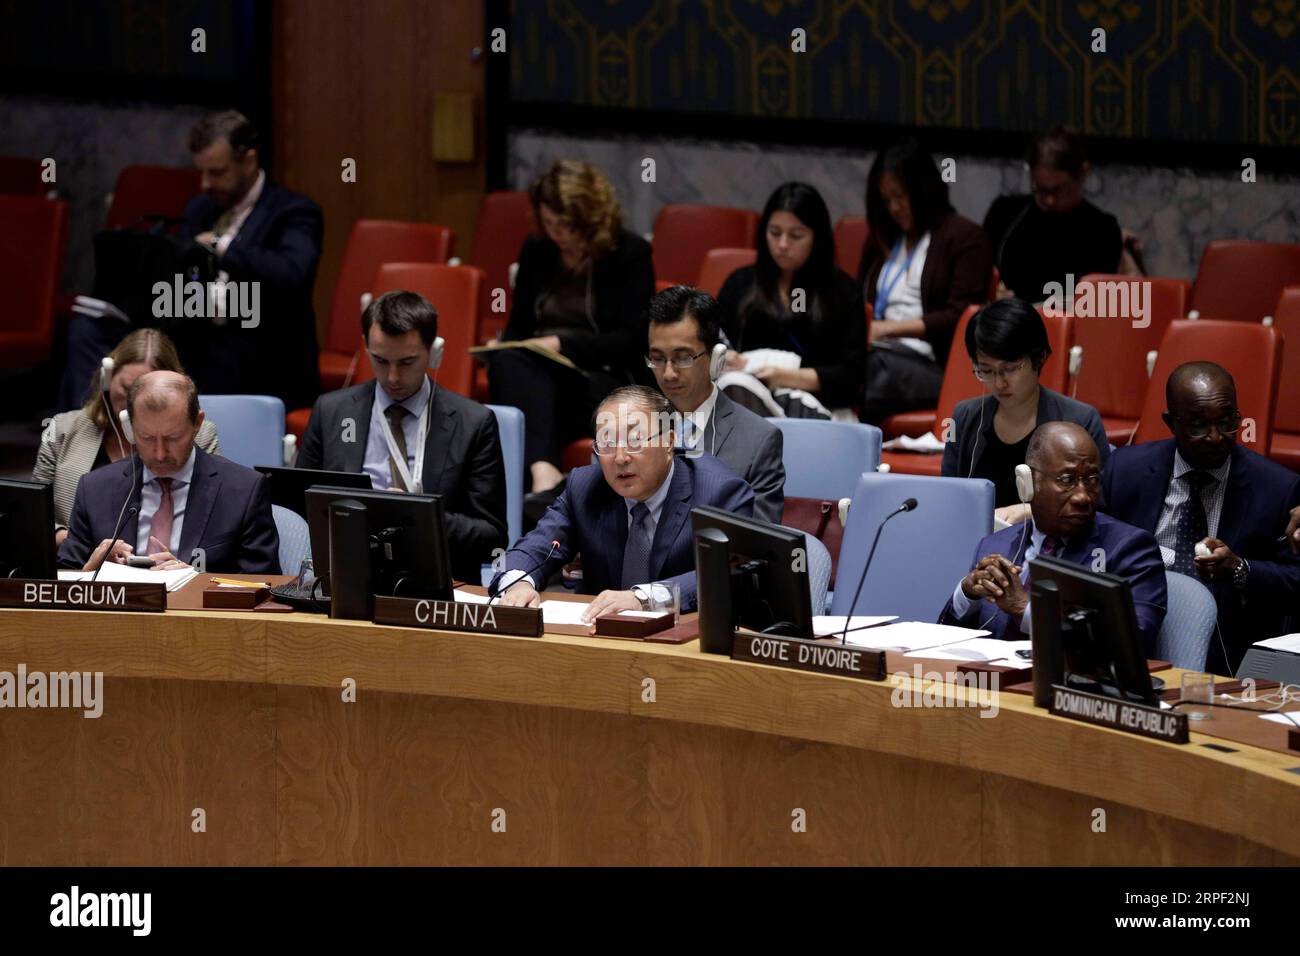 (190910) -- NATIONS UNIES, 10 septembre 2019 -- Zhang Jun (C, front), représentant permanent de la Chine auprès des Nations Unies, s'adresse à une réunion du Conseil de sécurité sur la situation en Afghanistan, au siège des Nations Unies à New York, le 10 septembre 2019. Zhang Jun a appelé mardi à aider l'Afghanistan à renforcer ses capacités en matière de sécurité alors que la situation sécuritaire dans le pays reste faible. ONU-CONSEIL DE SÉCURITÉ-AFGHANISTAN-ENVOYÉ CHINOIS LIXMUZI PUBLICATIONXNOTXINXCHN Banque D'Images